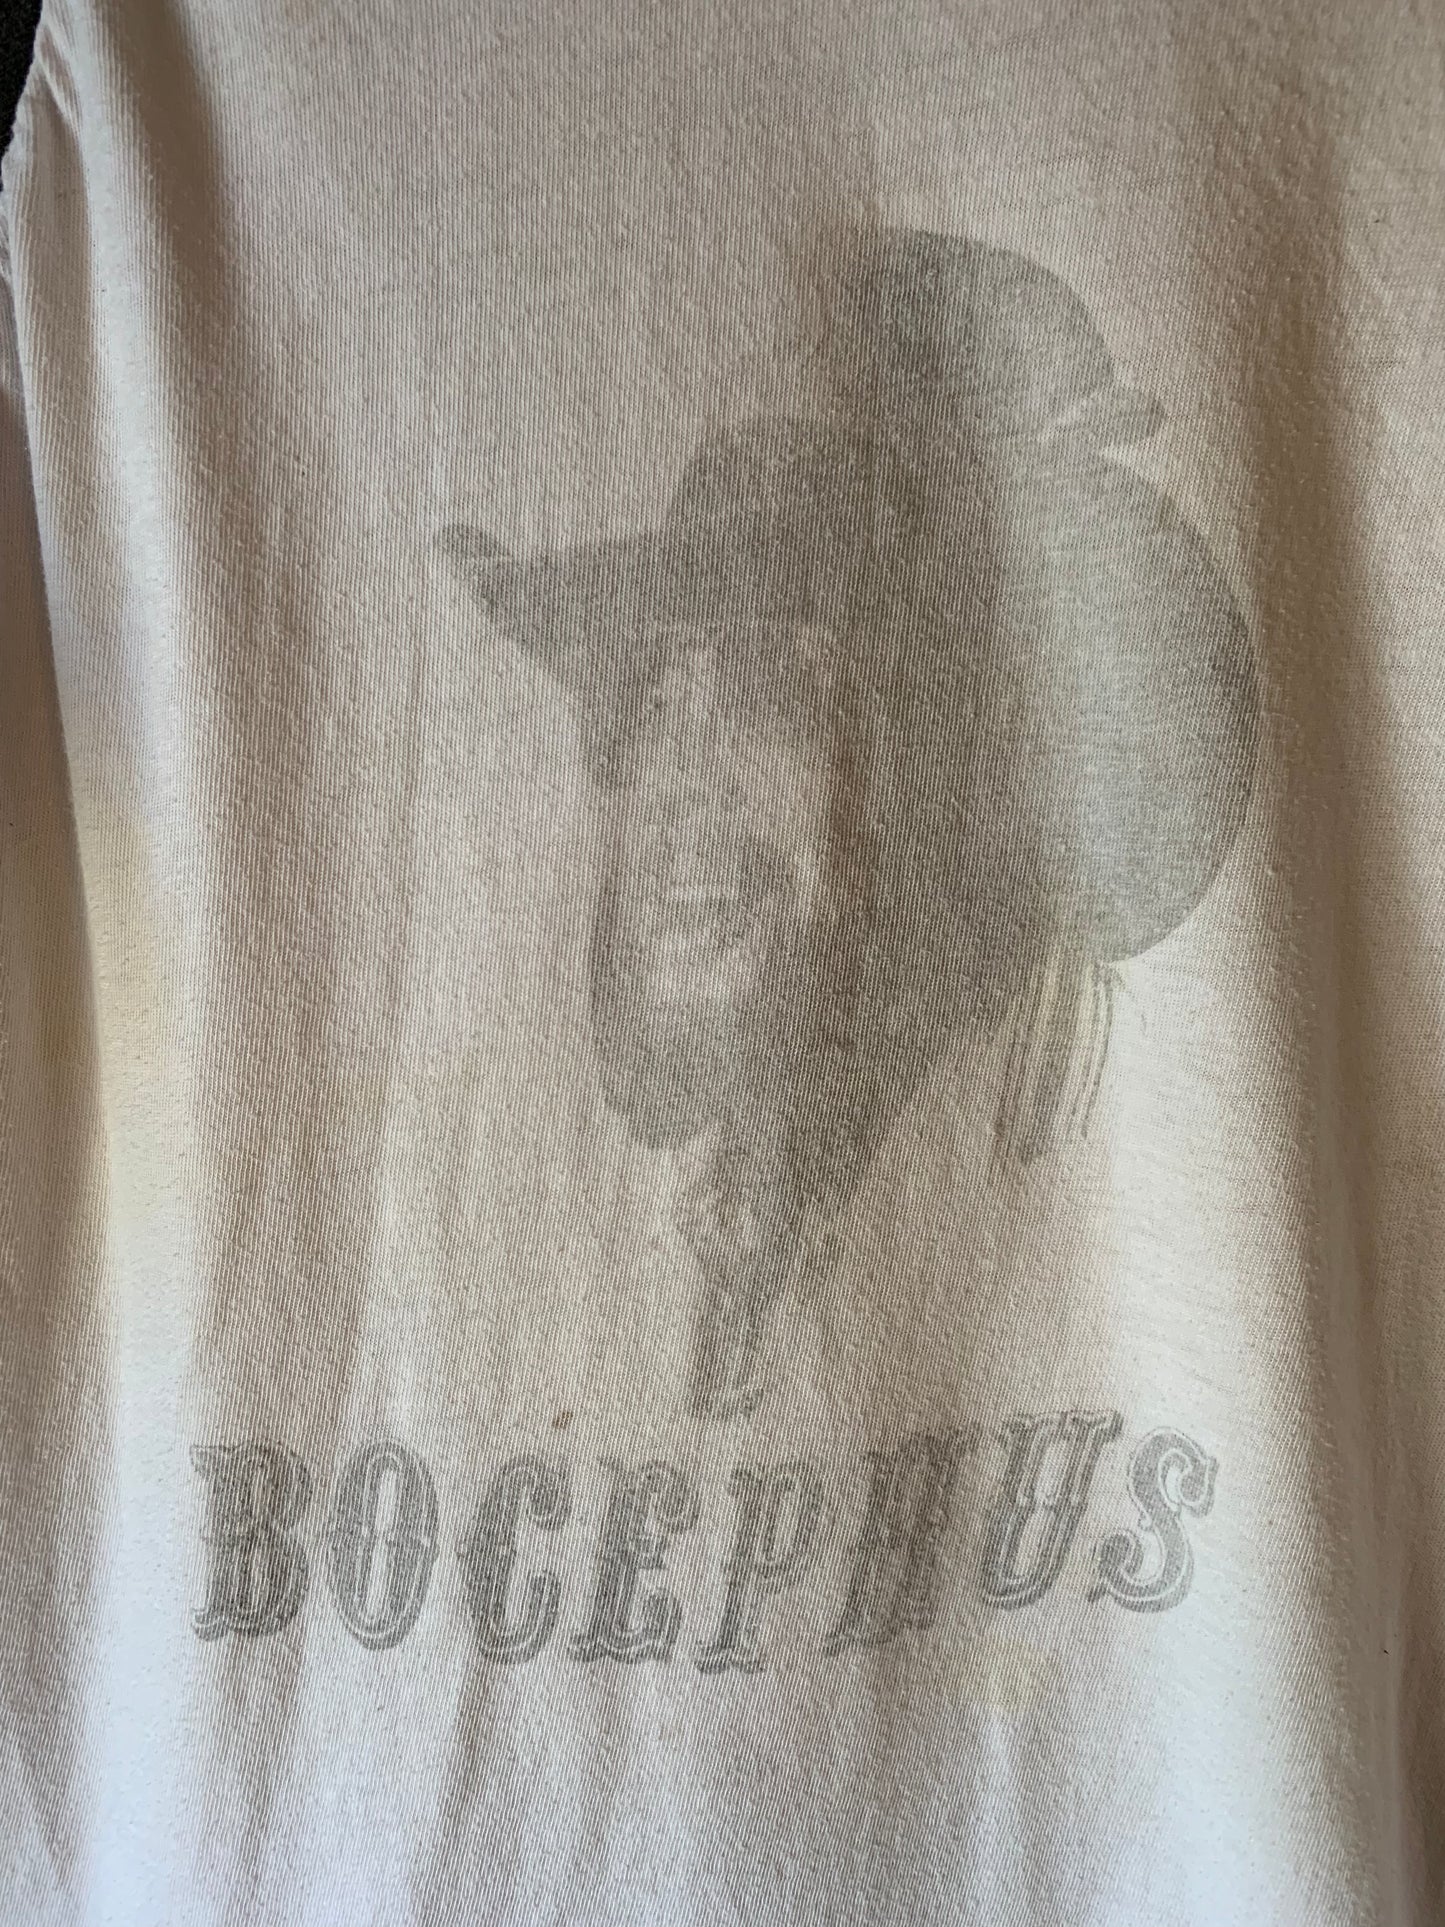 Hank Williams Jr. Bocephus '87 Tour Tee (S/M)